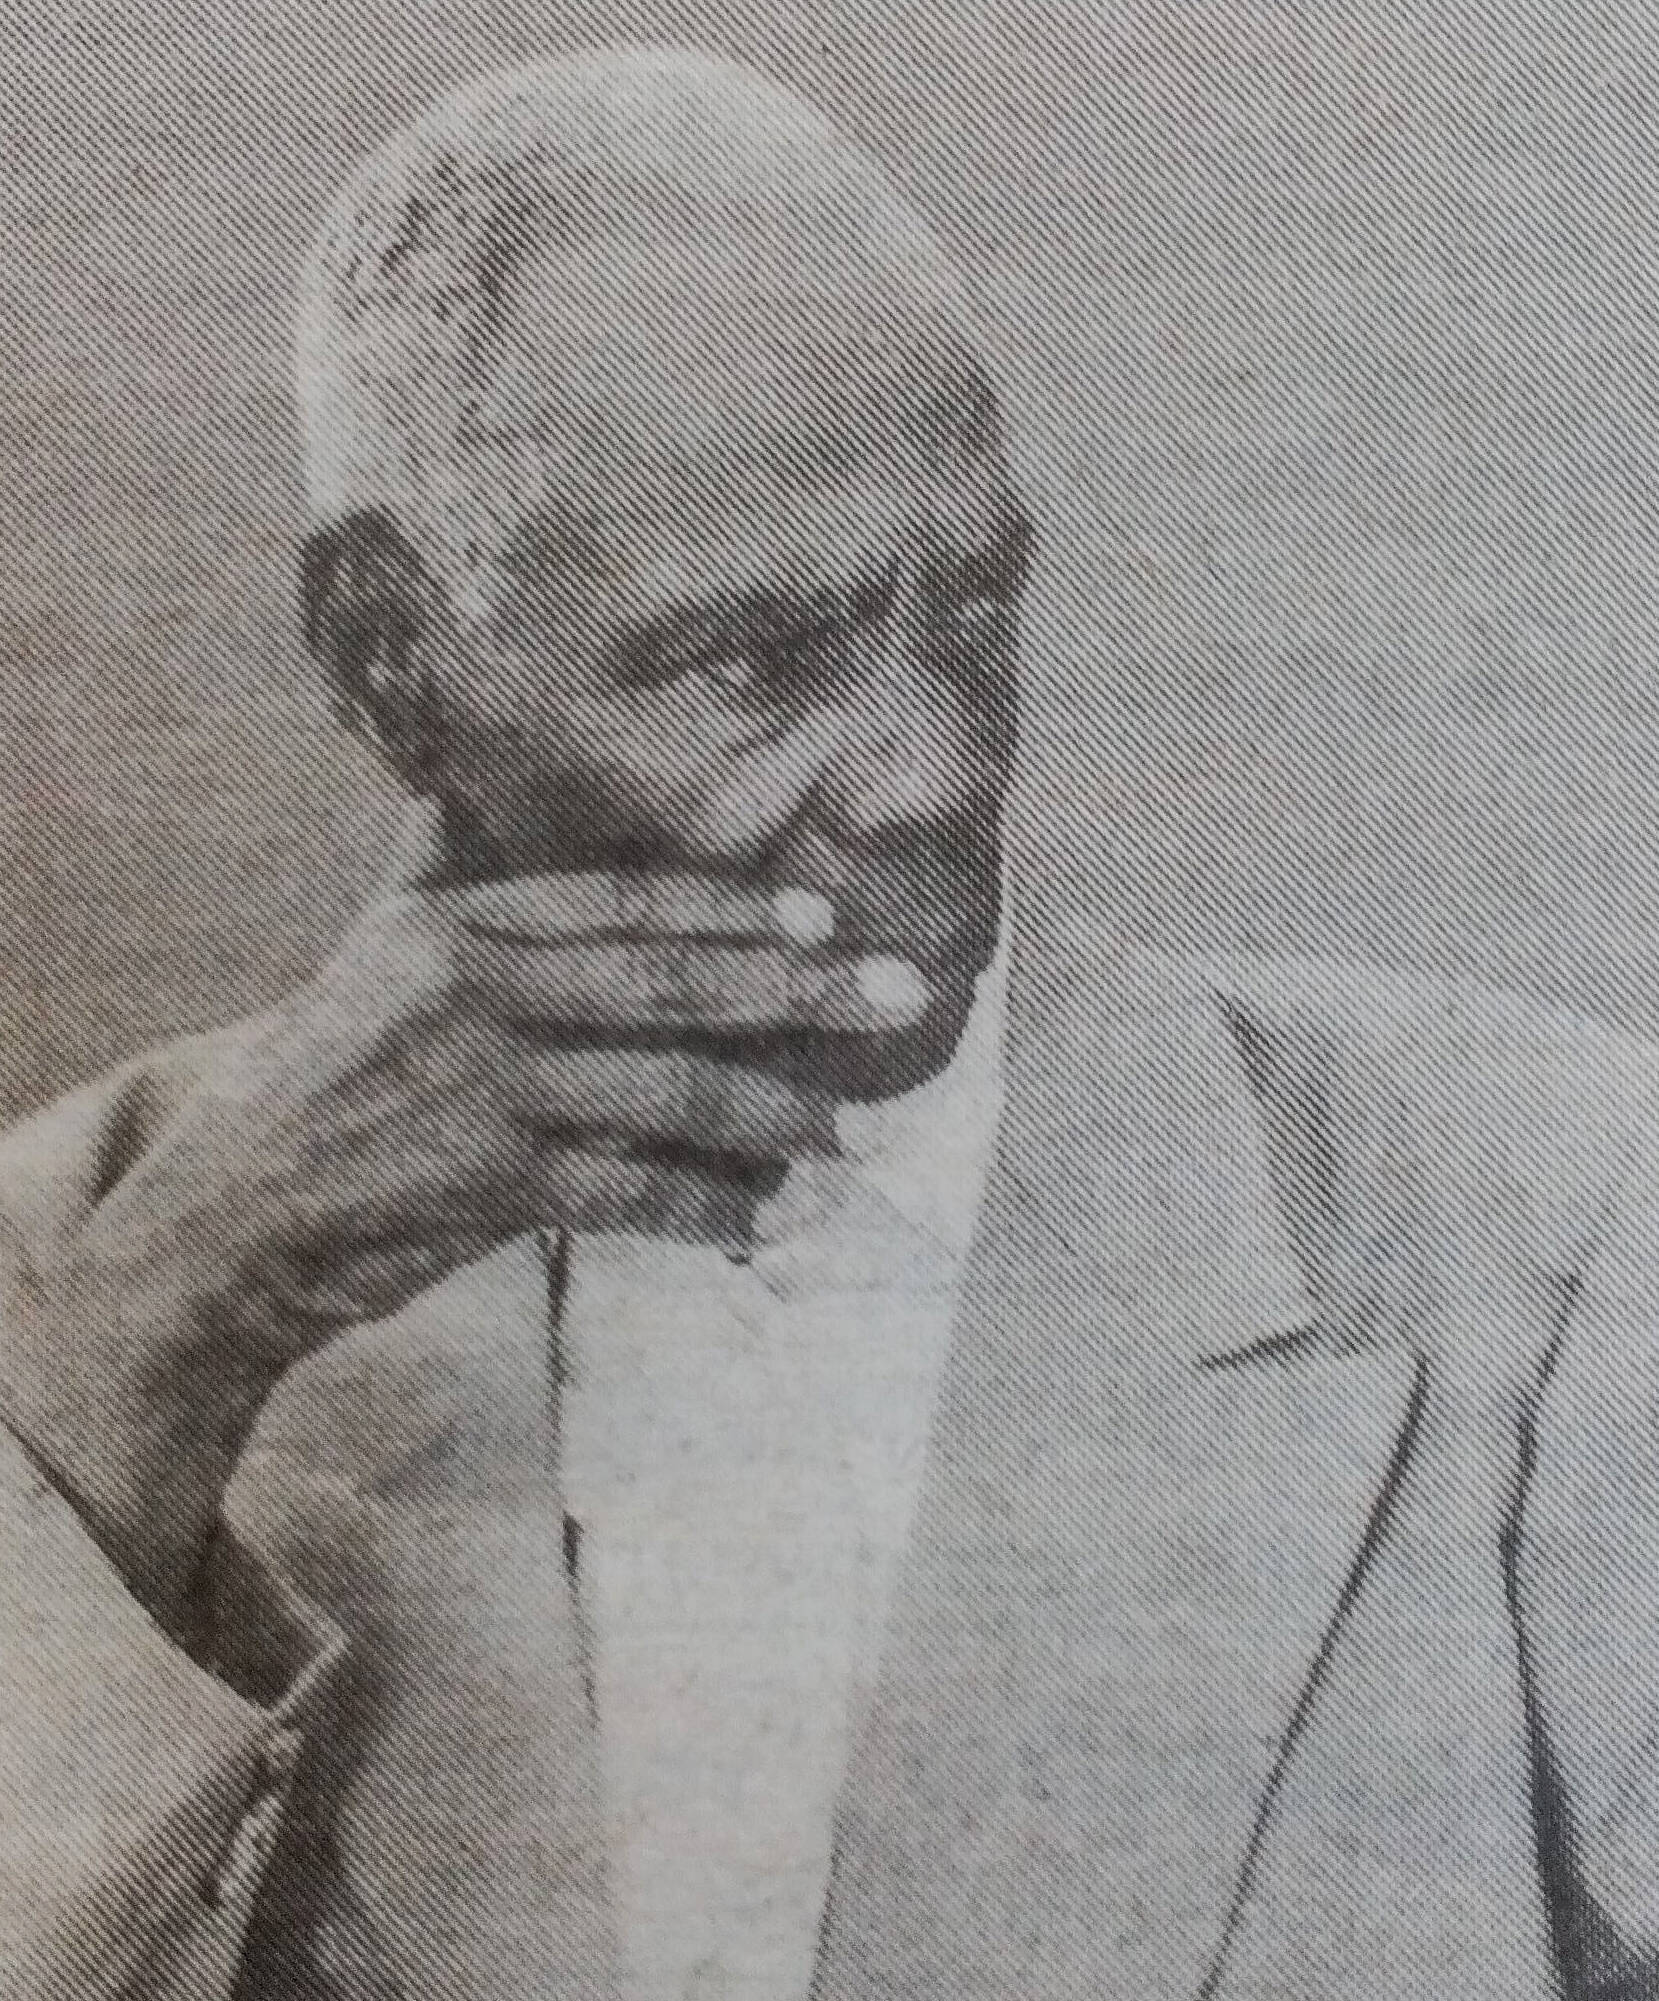 Obituary Image of Mzee Agusto Ogutu Alam 1928 - 31/03/2017